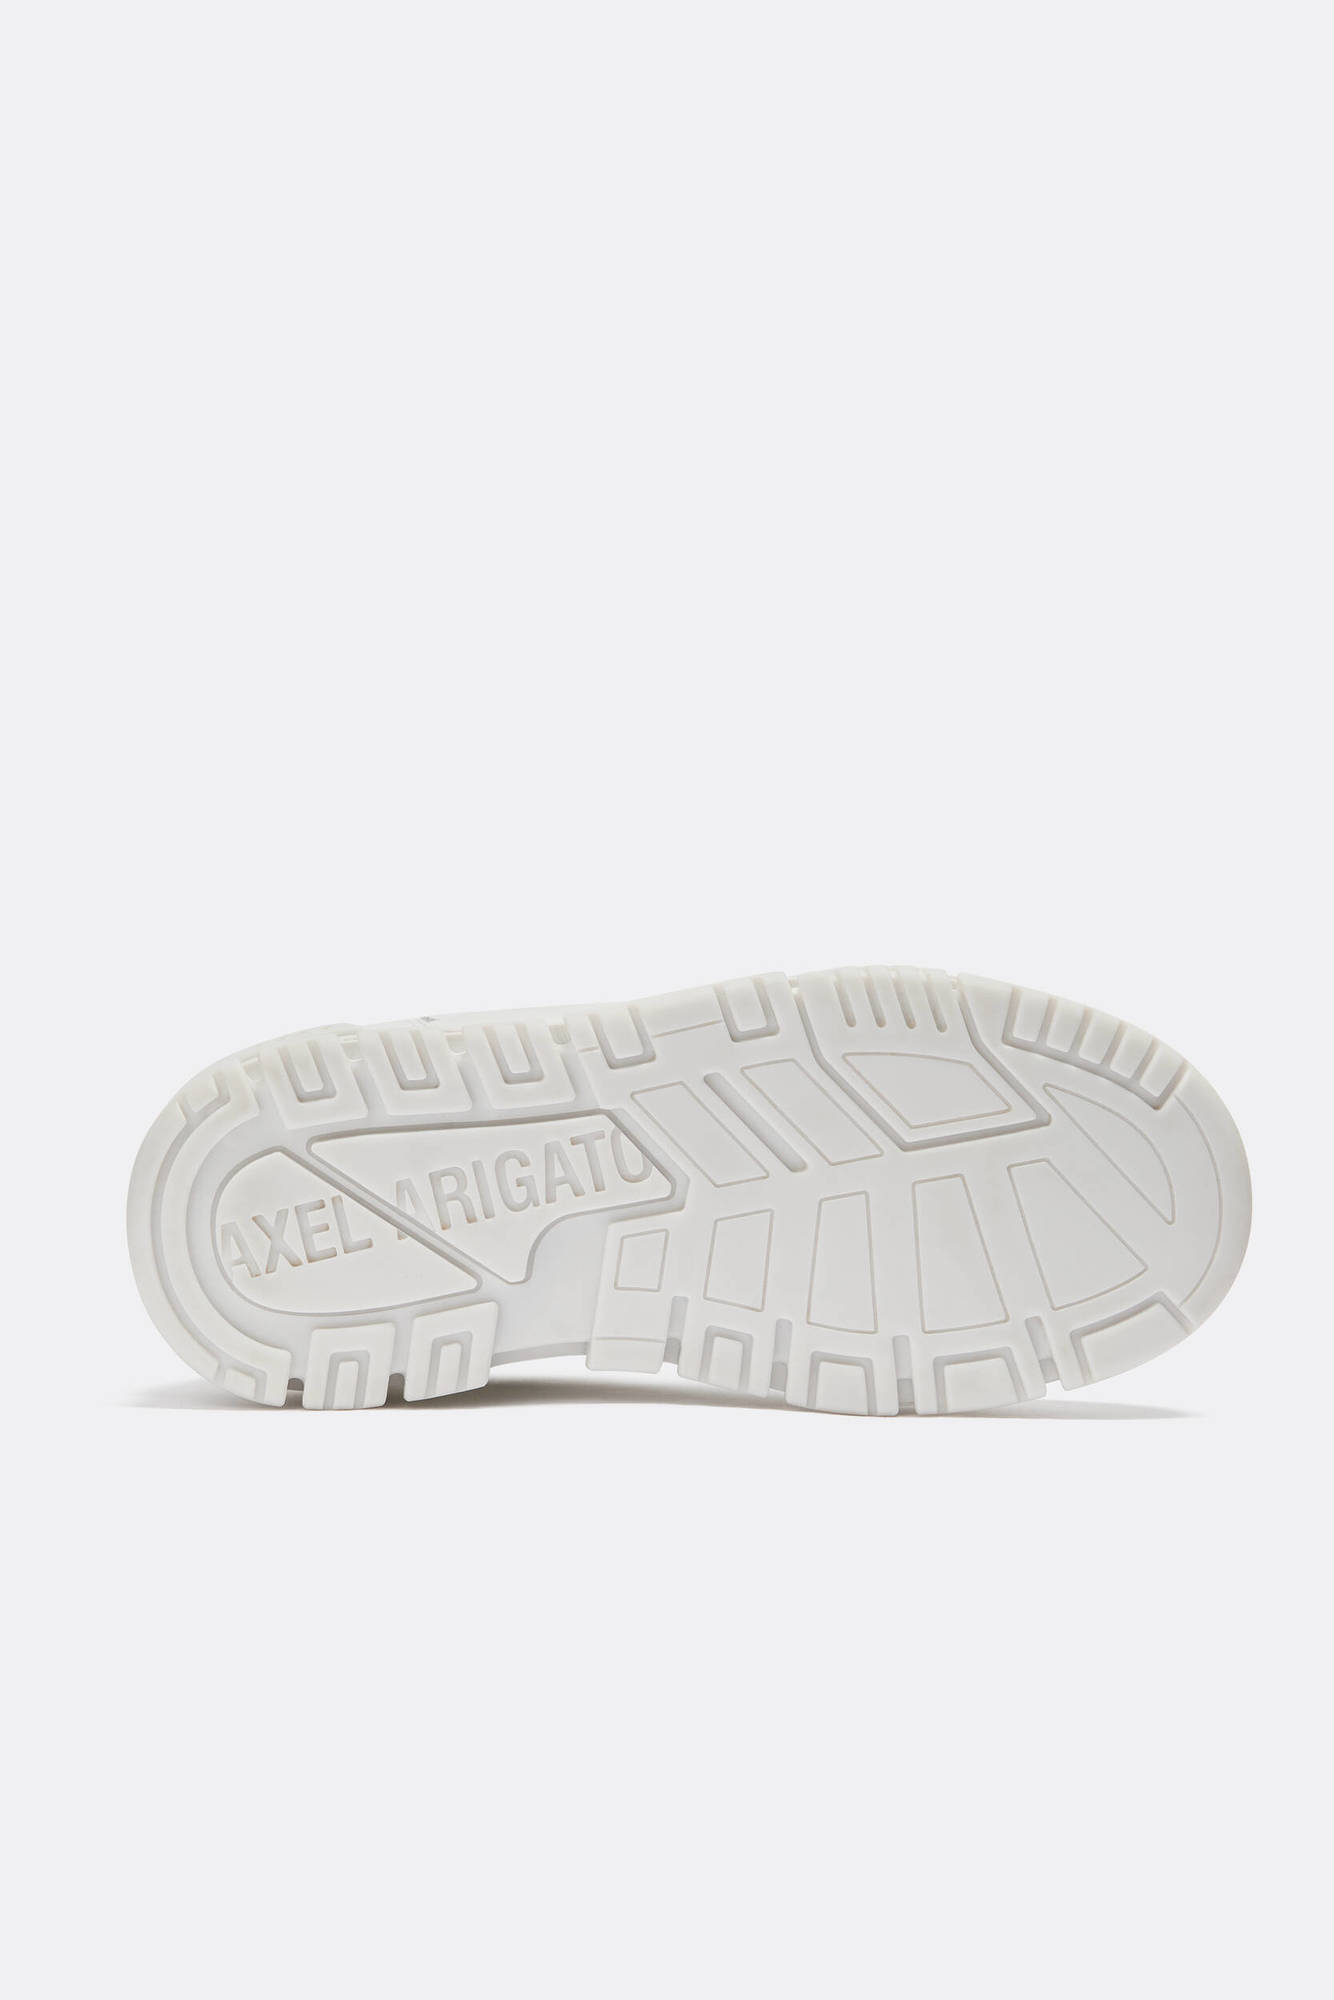 AXEL ARIGATO Area Lo Sneaker in White/White 47